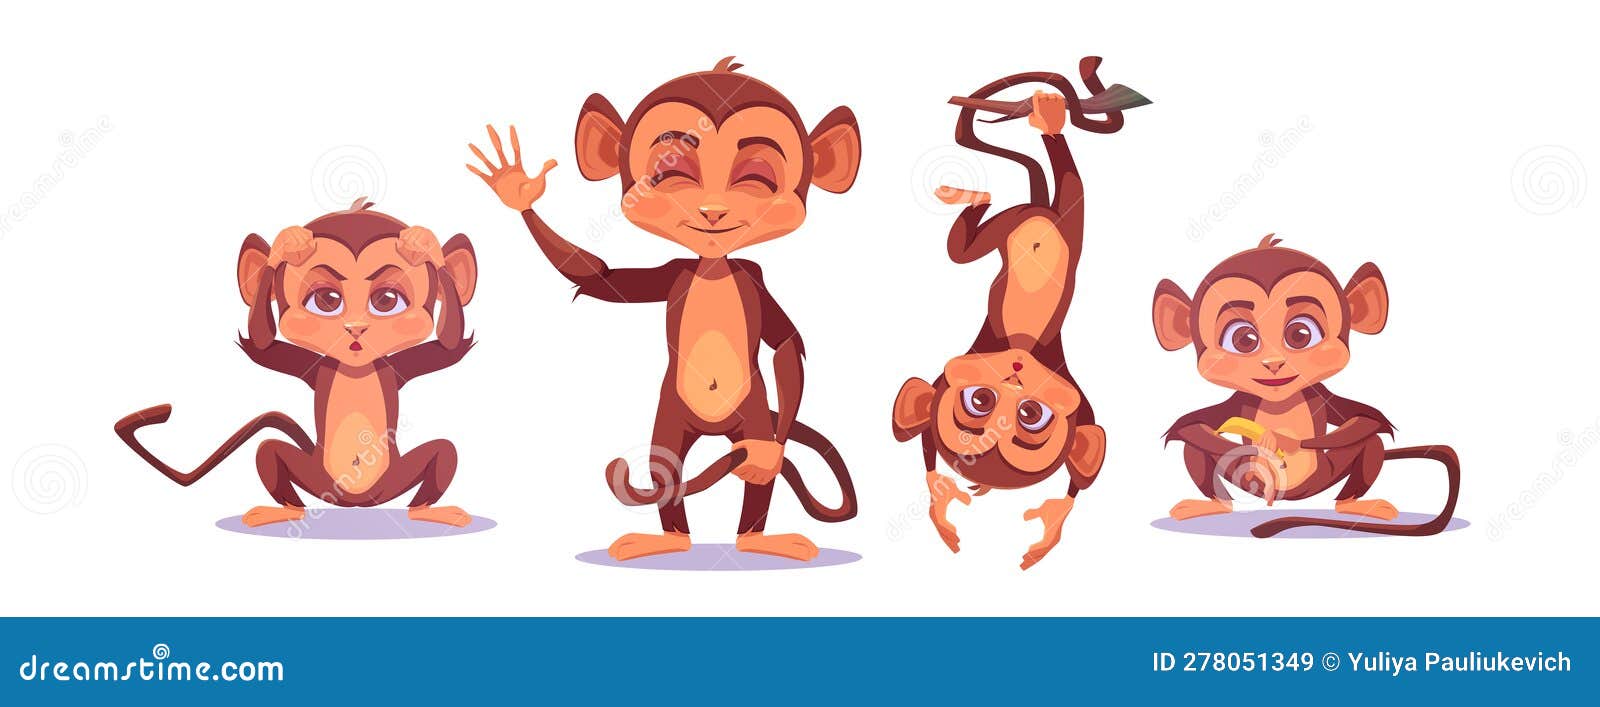 Ilustração em vetor de animal fofo de desenho animado de macaco infantil